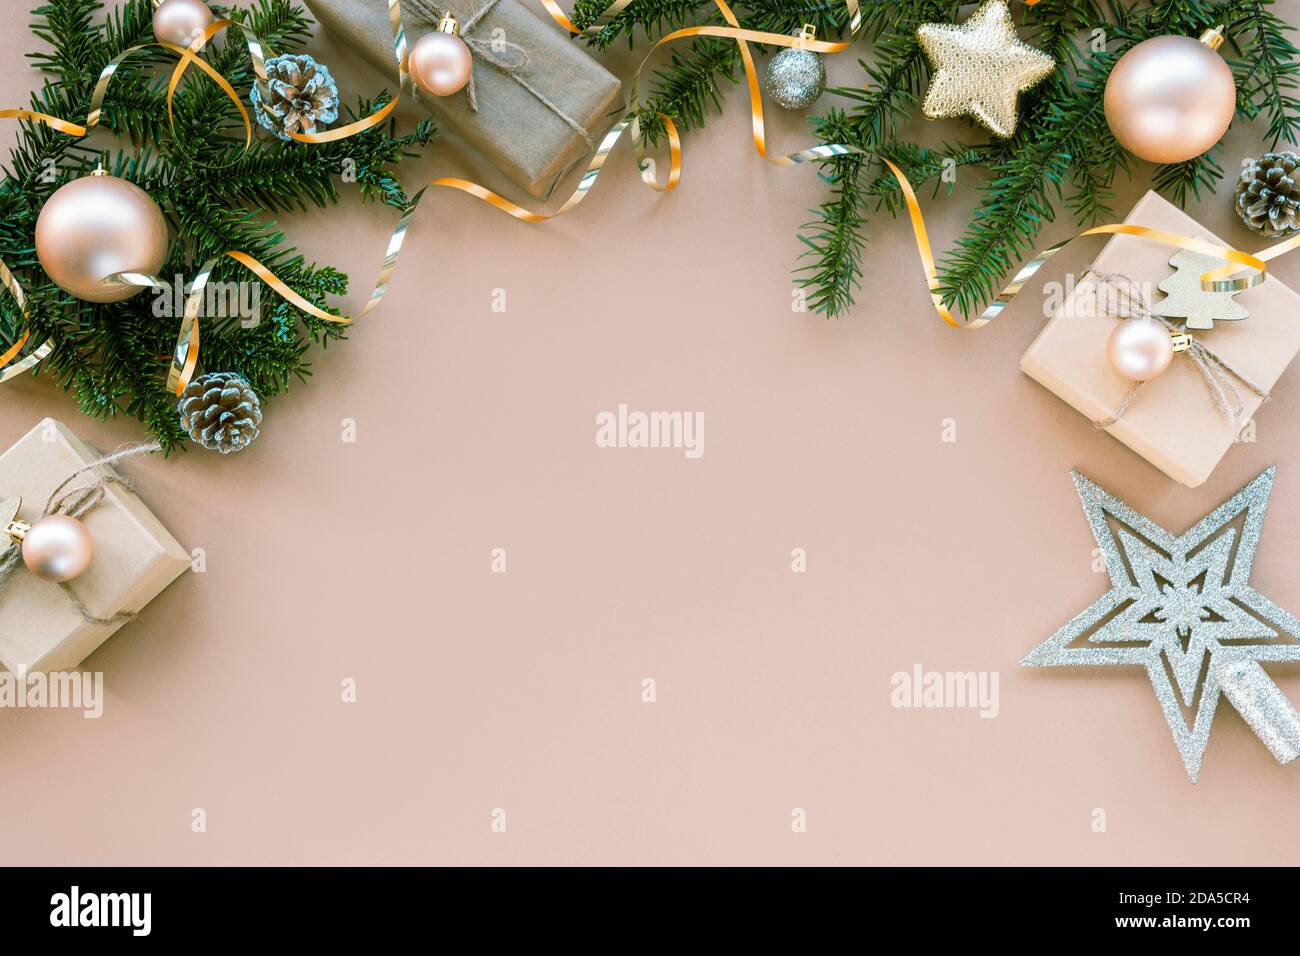 Natale sfondo festivo con rami di abete, regali in scatole, baubles e giocattoli. Vista dall'alto, disposizione piatta, spazio per la copia Foto Stock